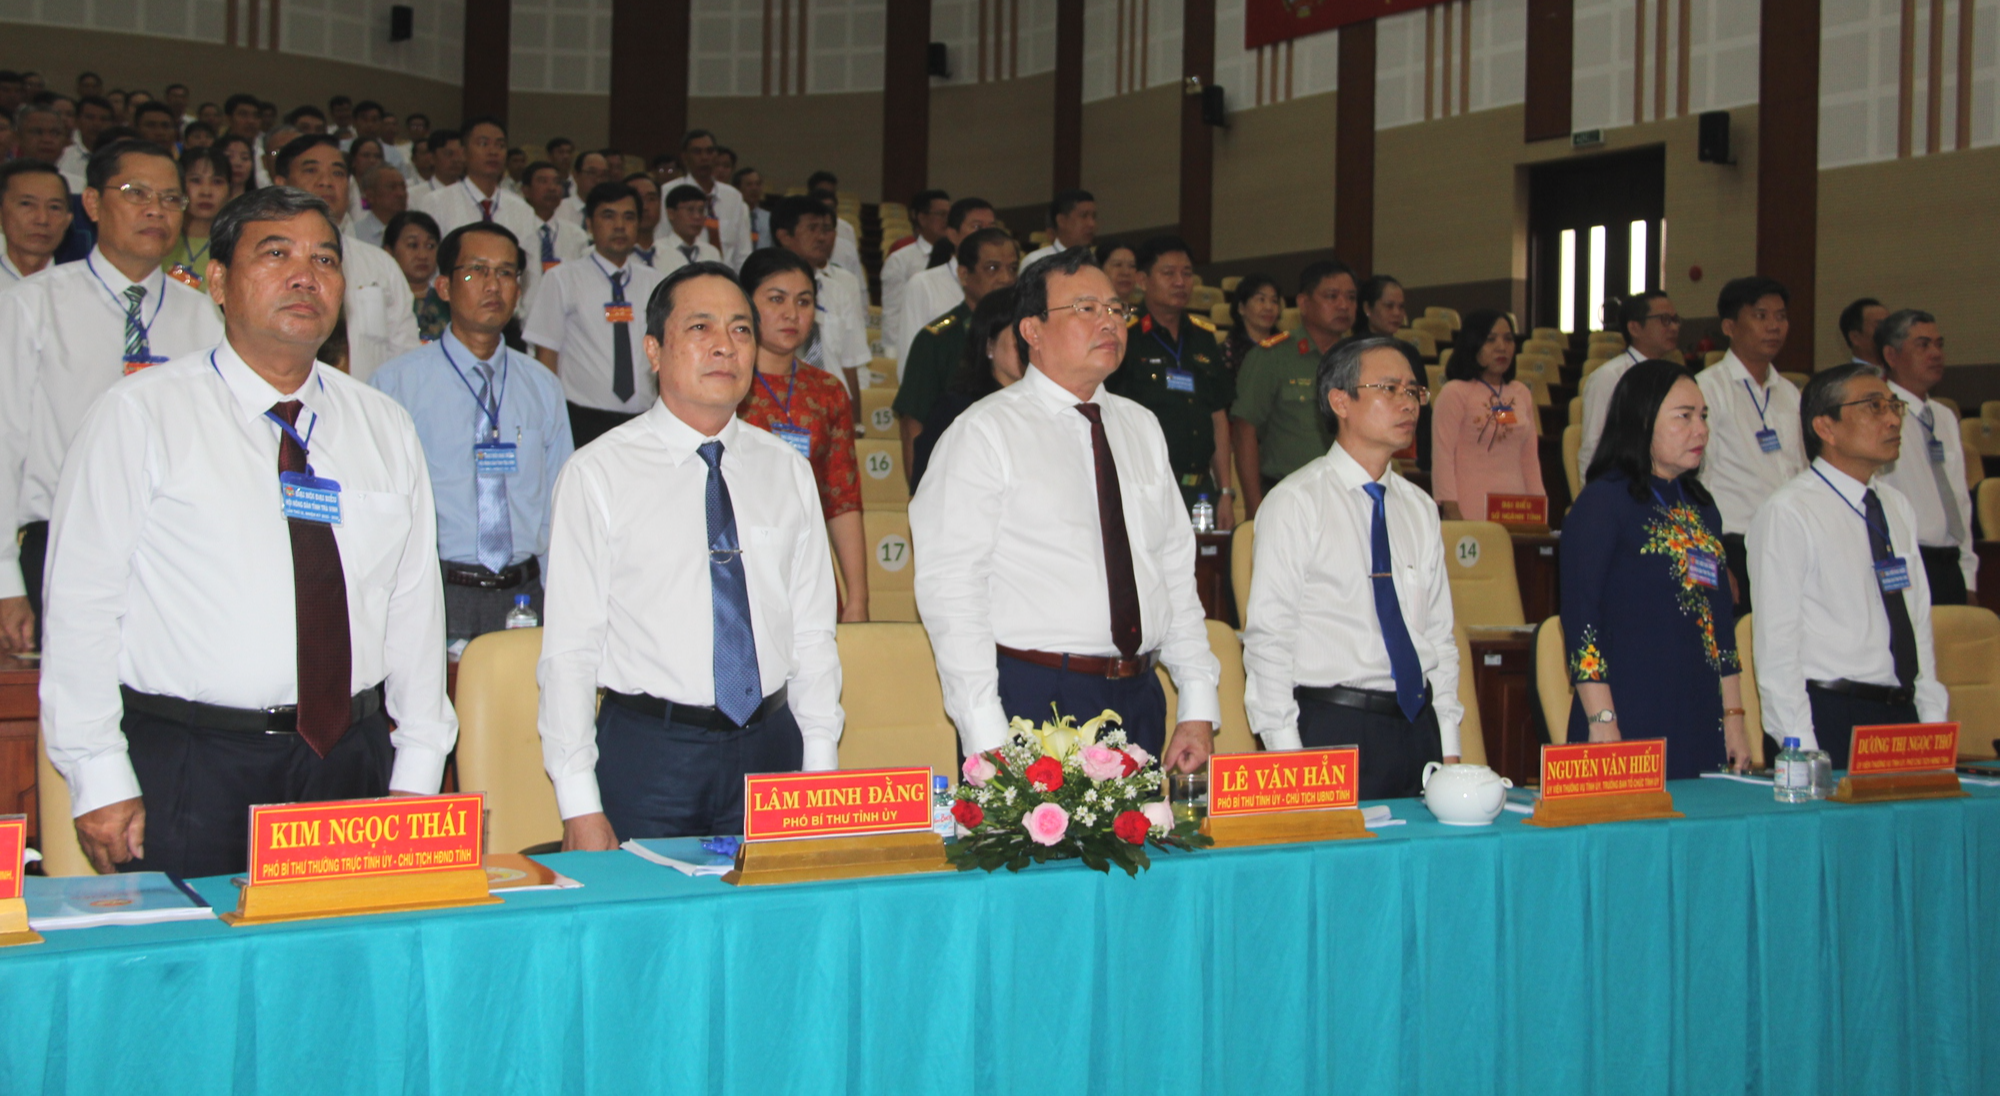 Bí thư Tỉnh ủy Trà Vinh, Phó Chủ tịch TƯ Hội NDVN dự, chỉ đạo Đại hội Hội Nông dân tỉnh Trà Vinh - Ảnh 1.